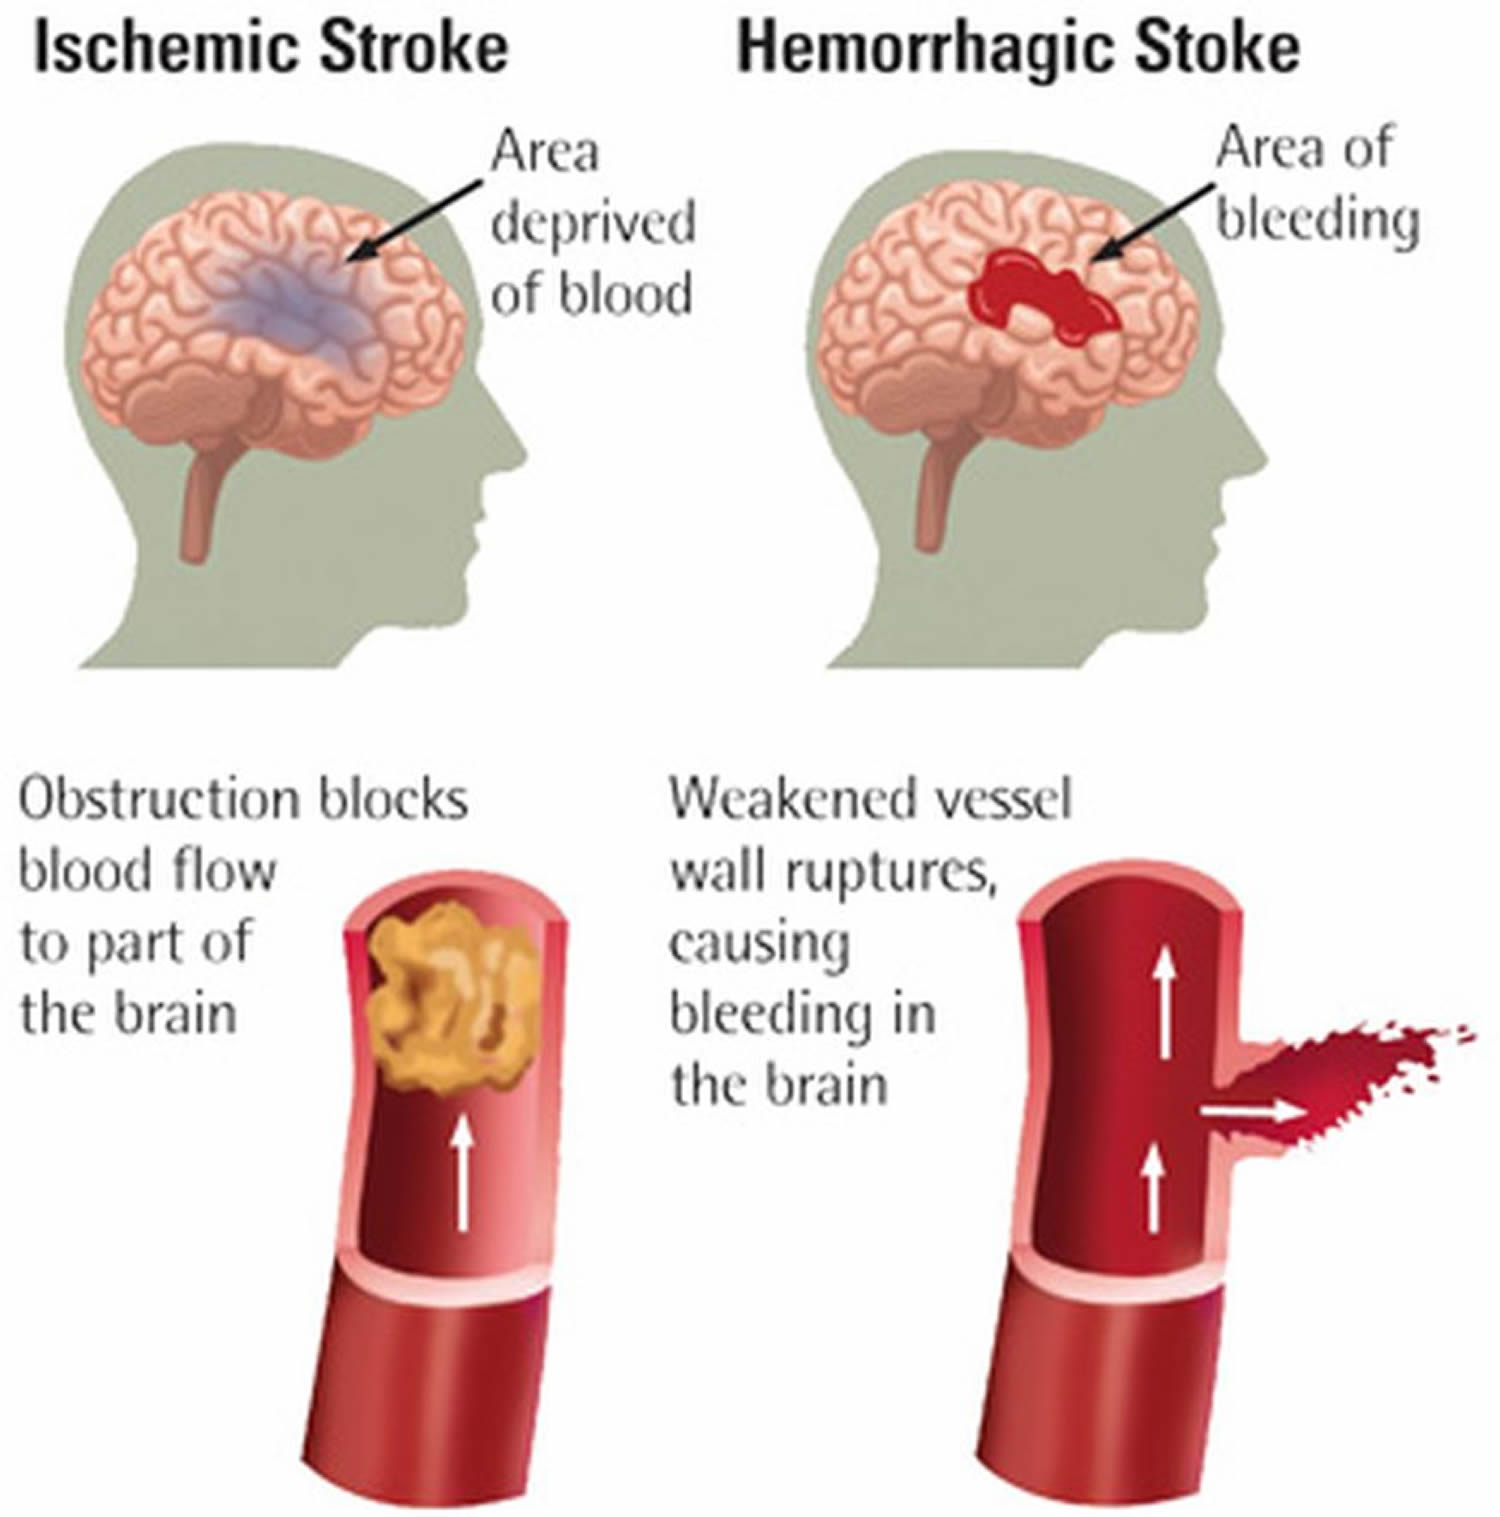 Ischemic stroke vs Hemorrhagic stroke